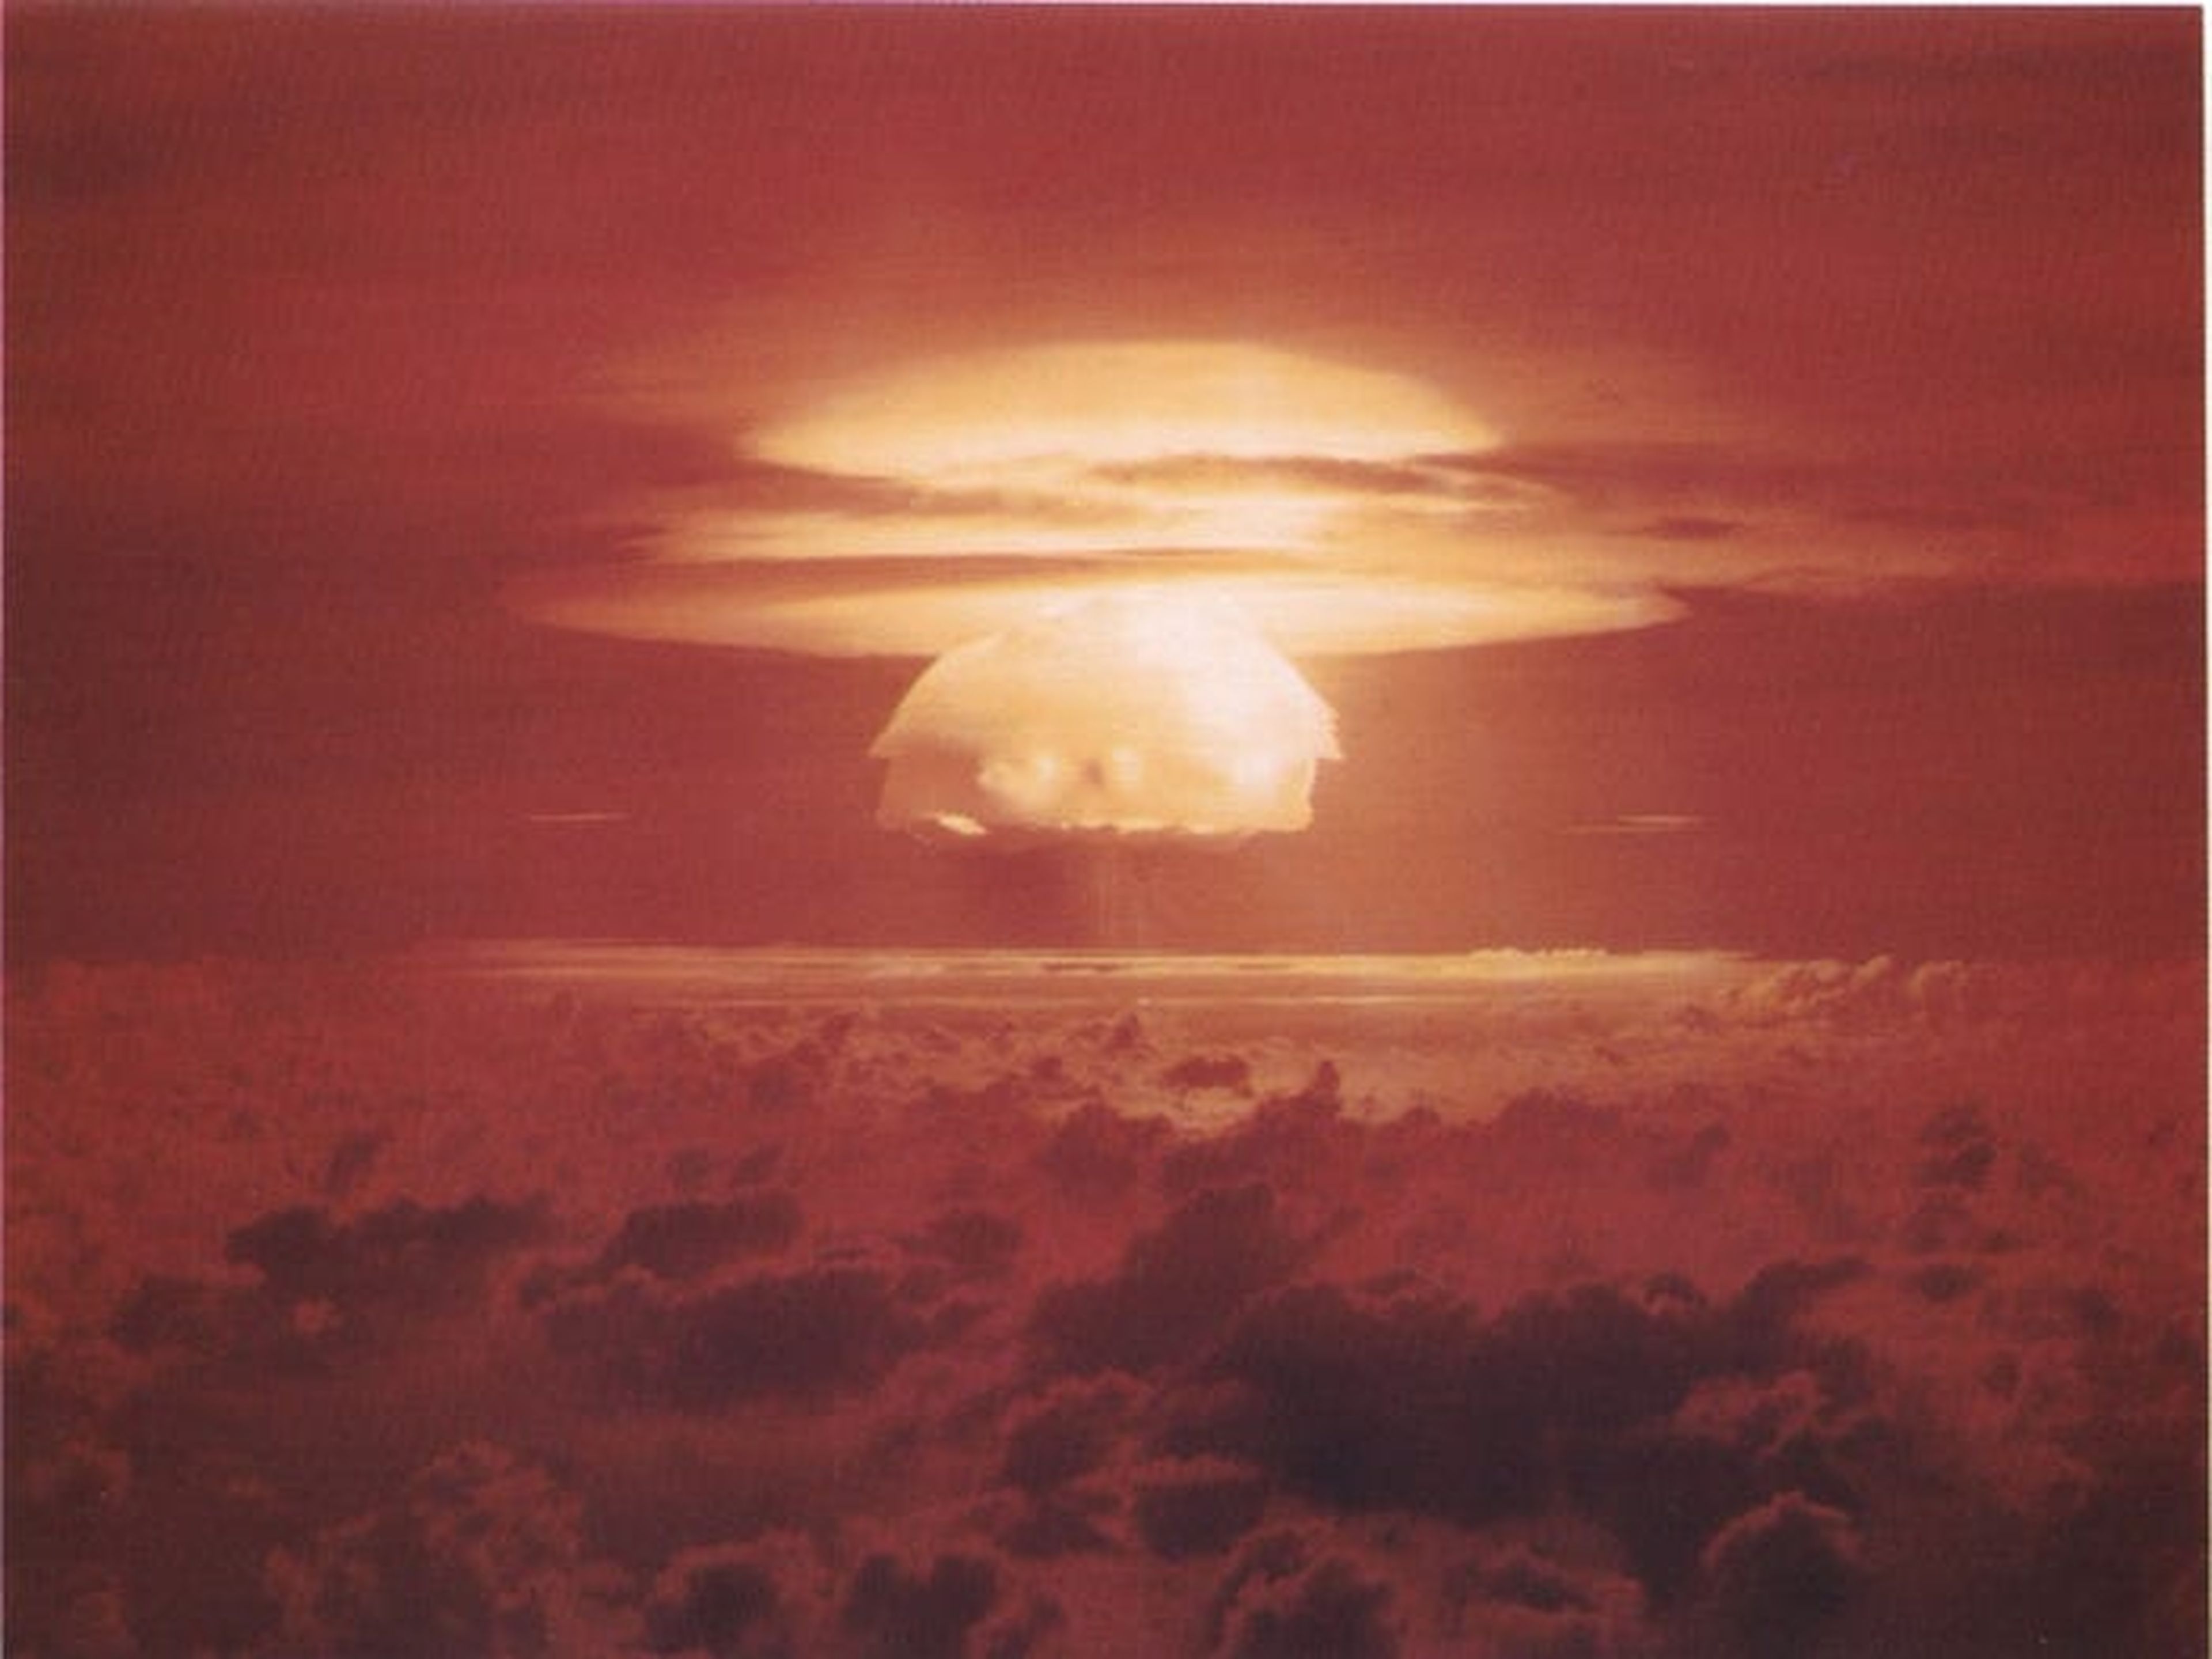 Una foto de la prueba de armas termonucleares en EEUU, concretamente en el Océano Pacífico el 1 de marzo de 1954.